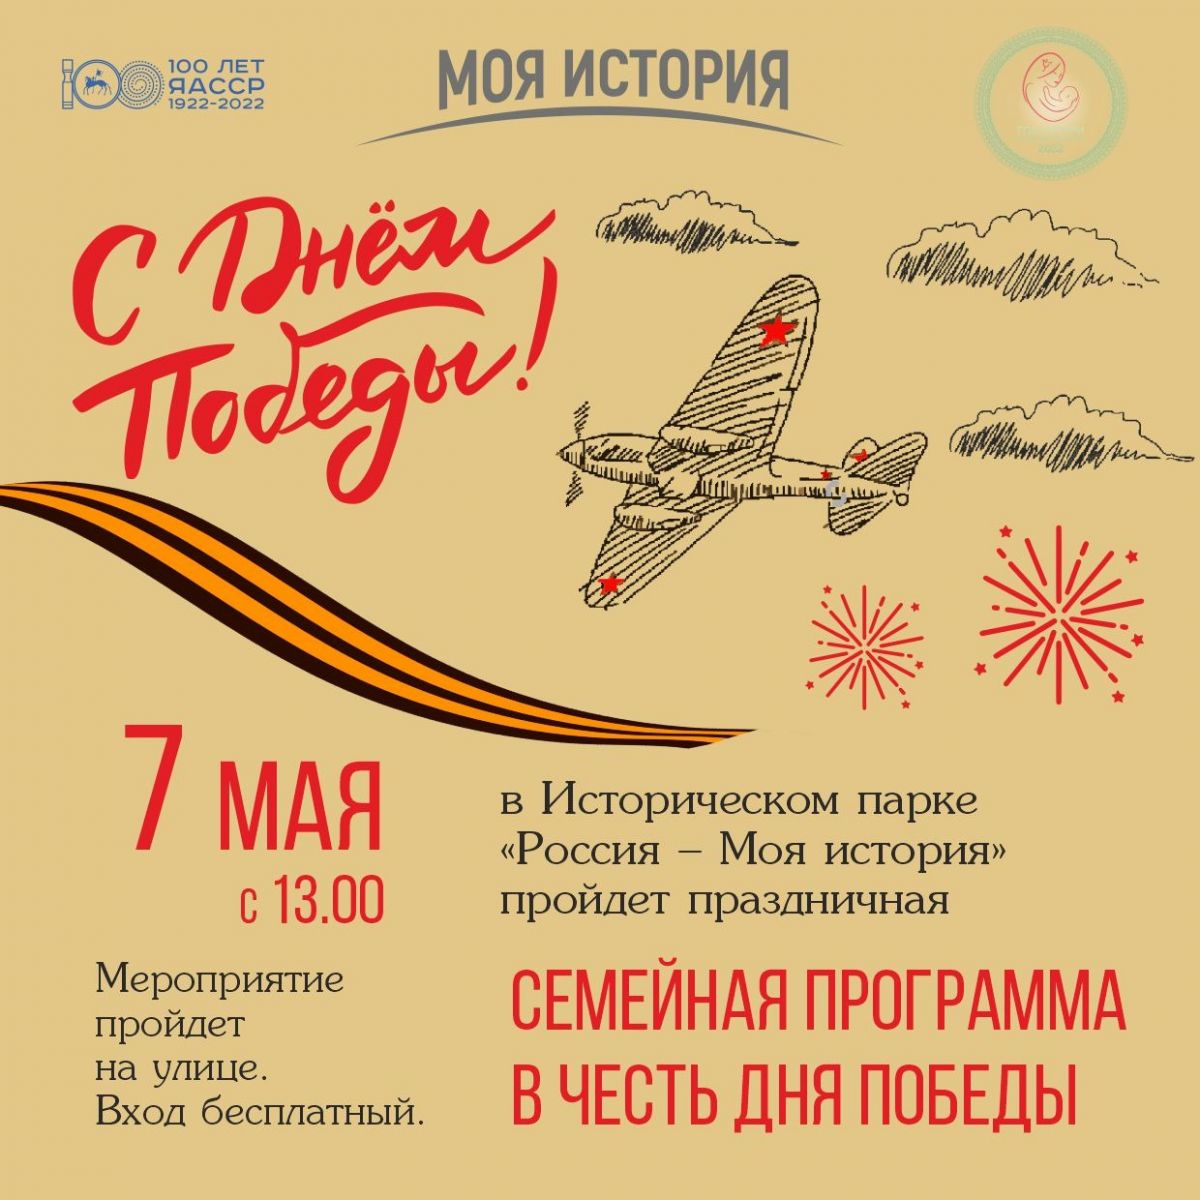 Народные гулянья пройдут в музее «Россия — моя история» в Якутске 7 мая